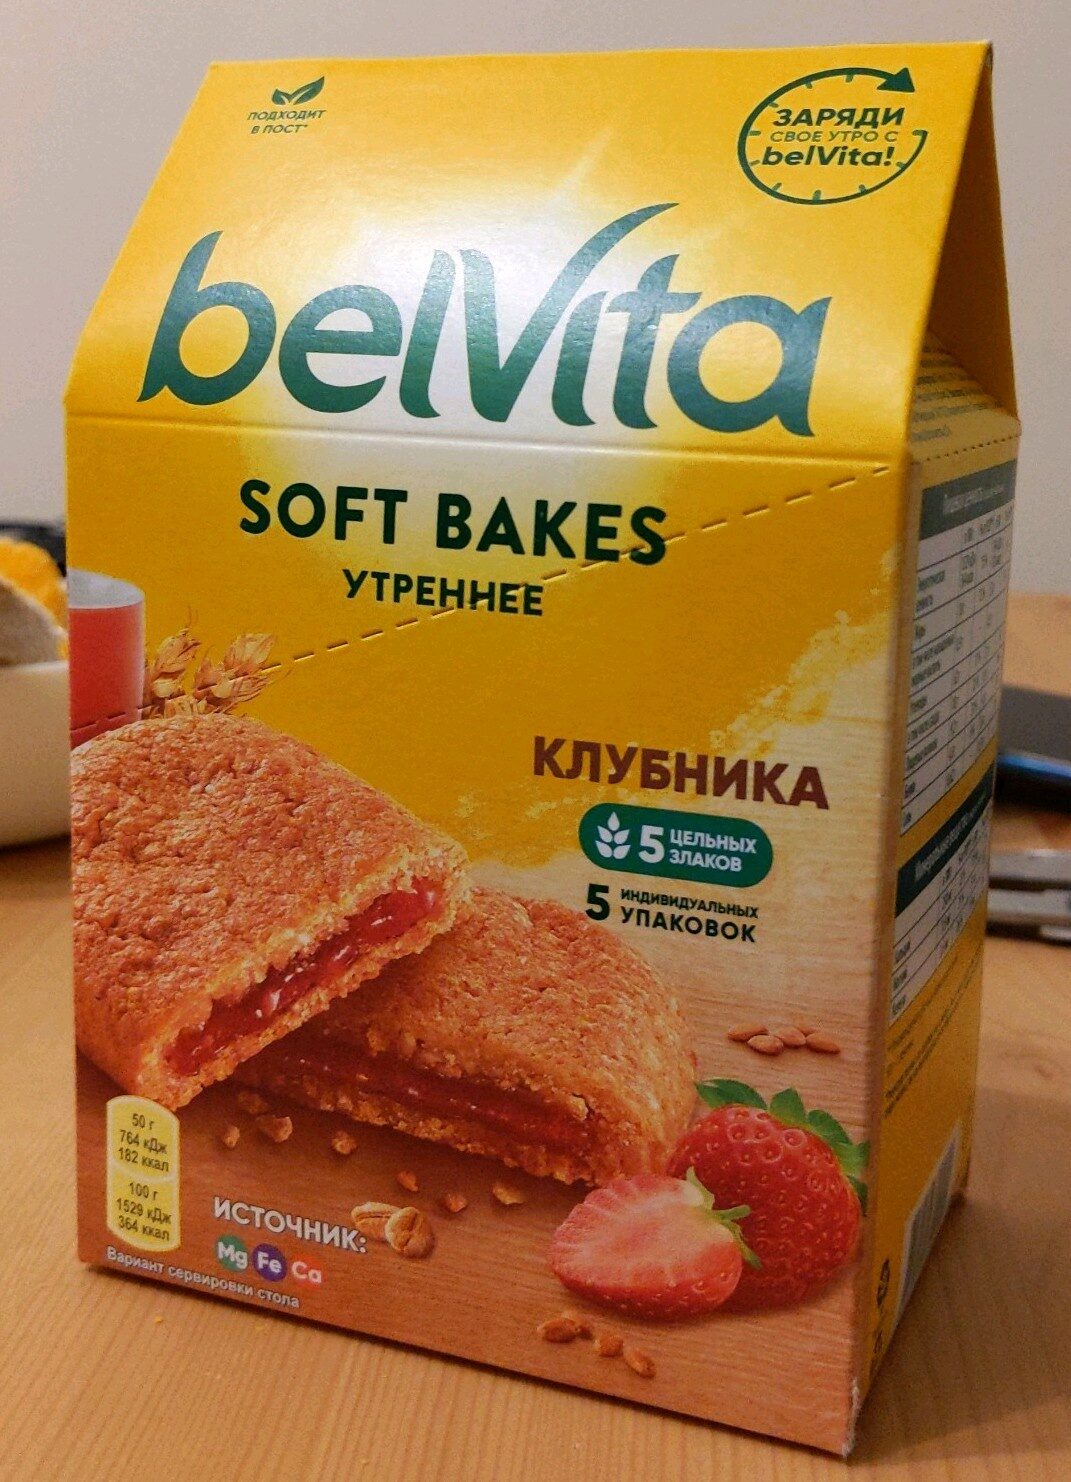 Печенье Belvita утреннее с клубничной начинкой - Product - ru